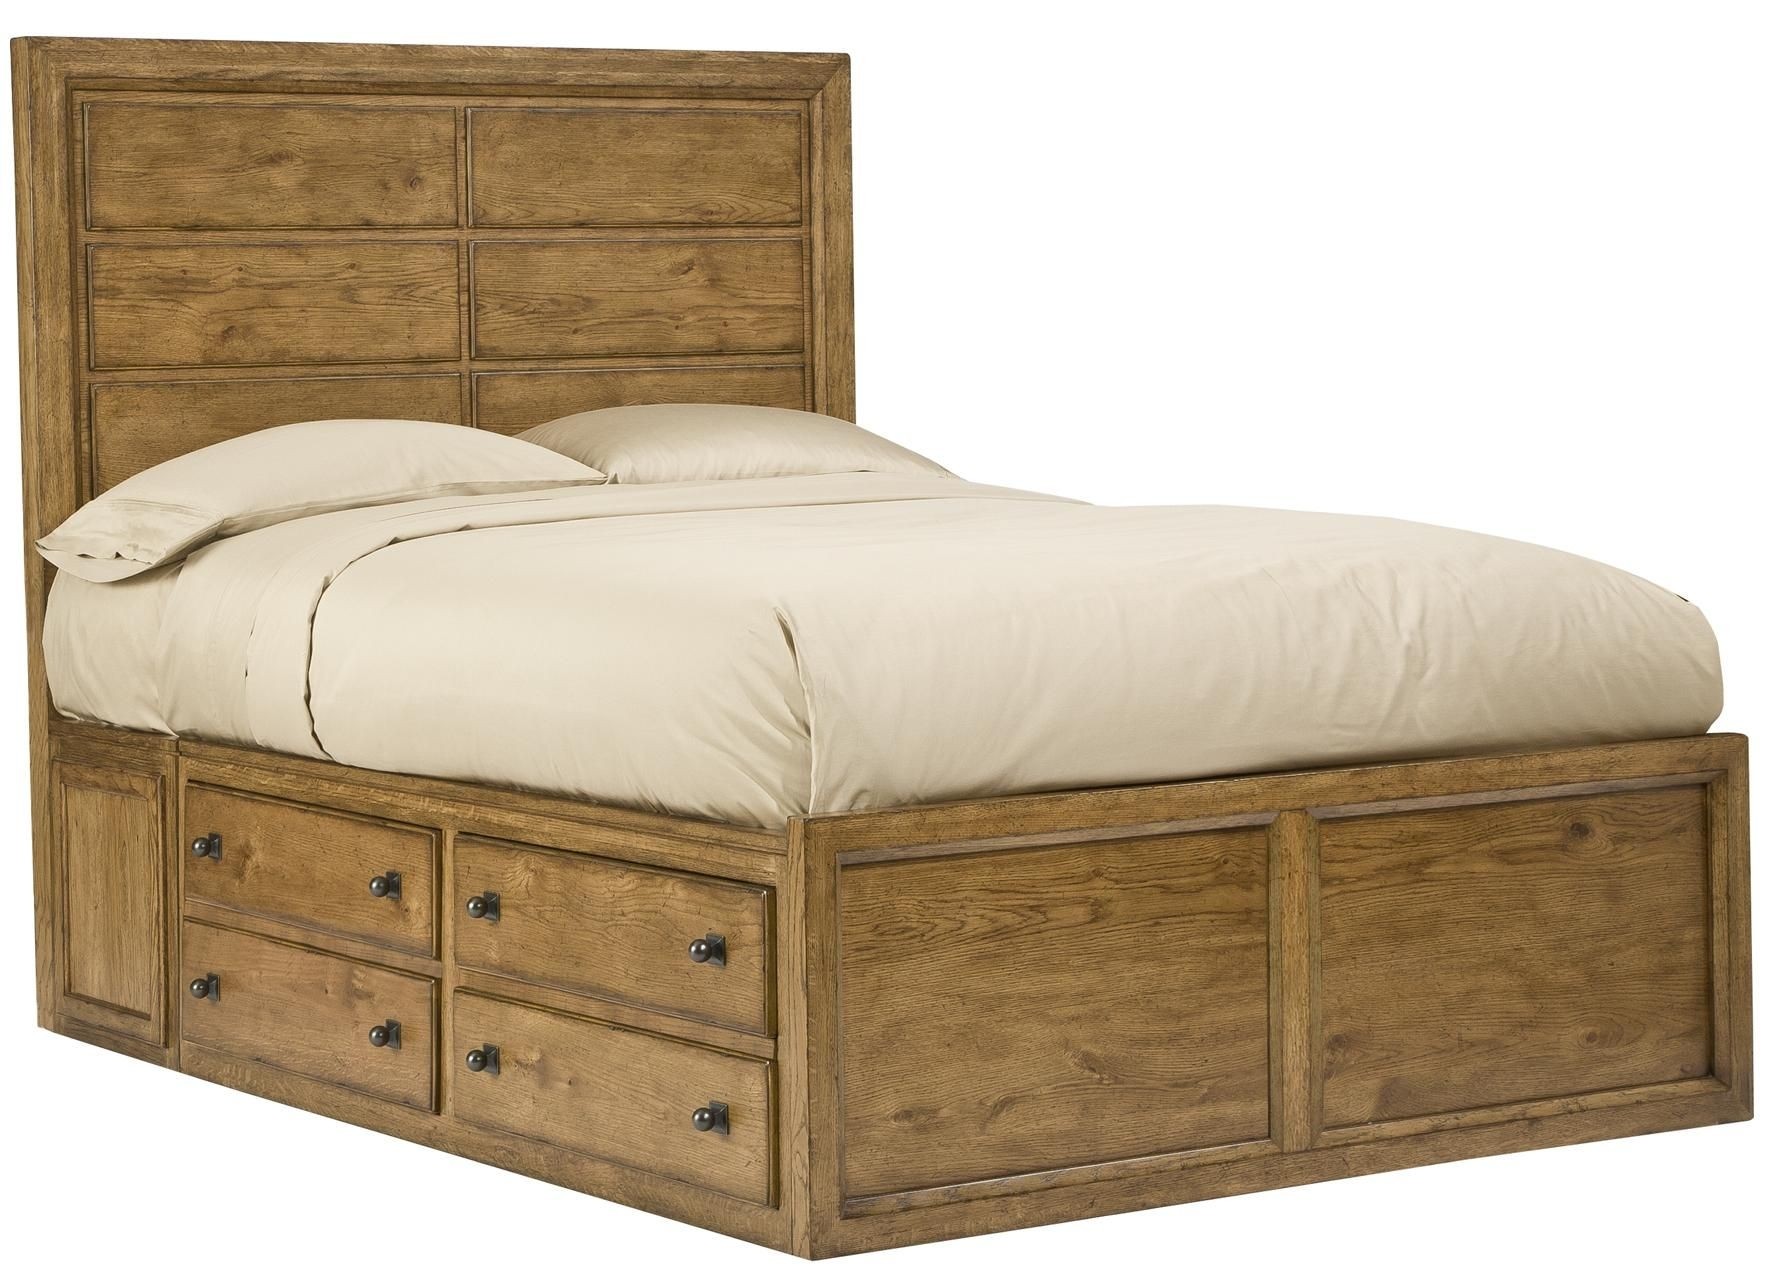 Queen size captain bed